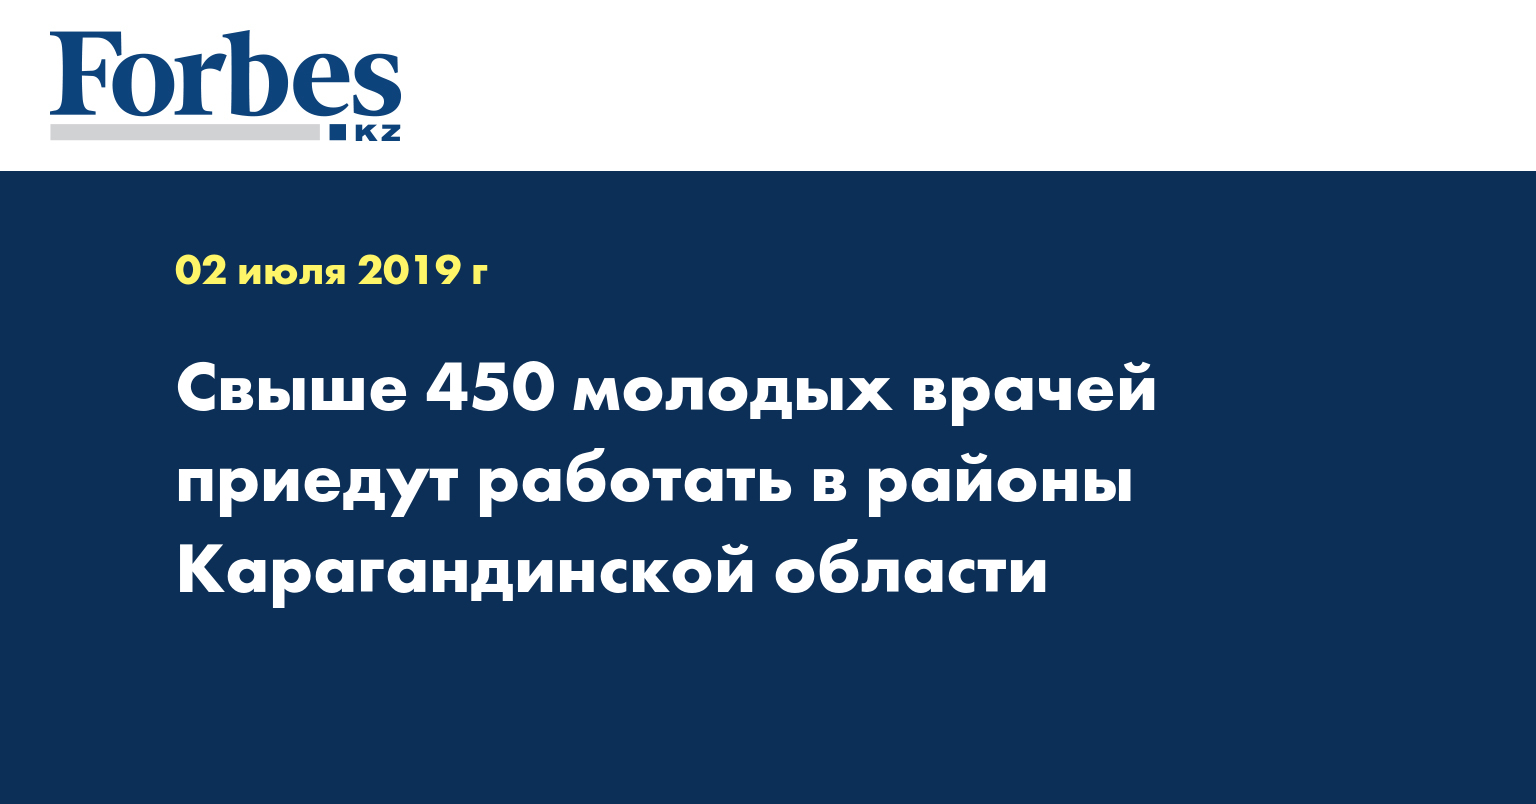 Свыше 450 молодых врачей приедут работать в районы Карагандинской области